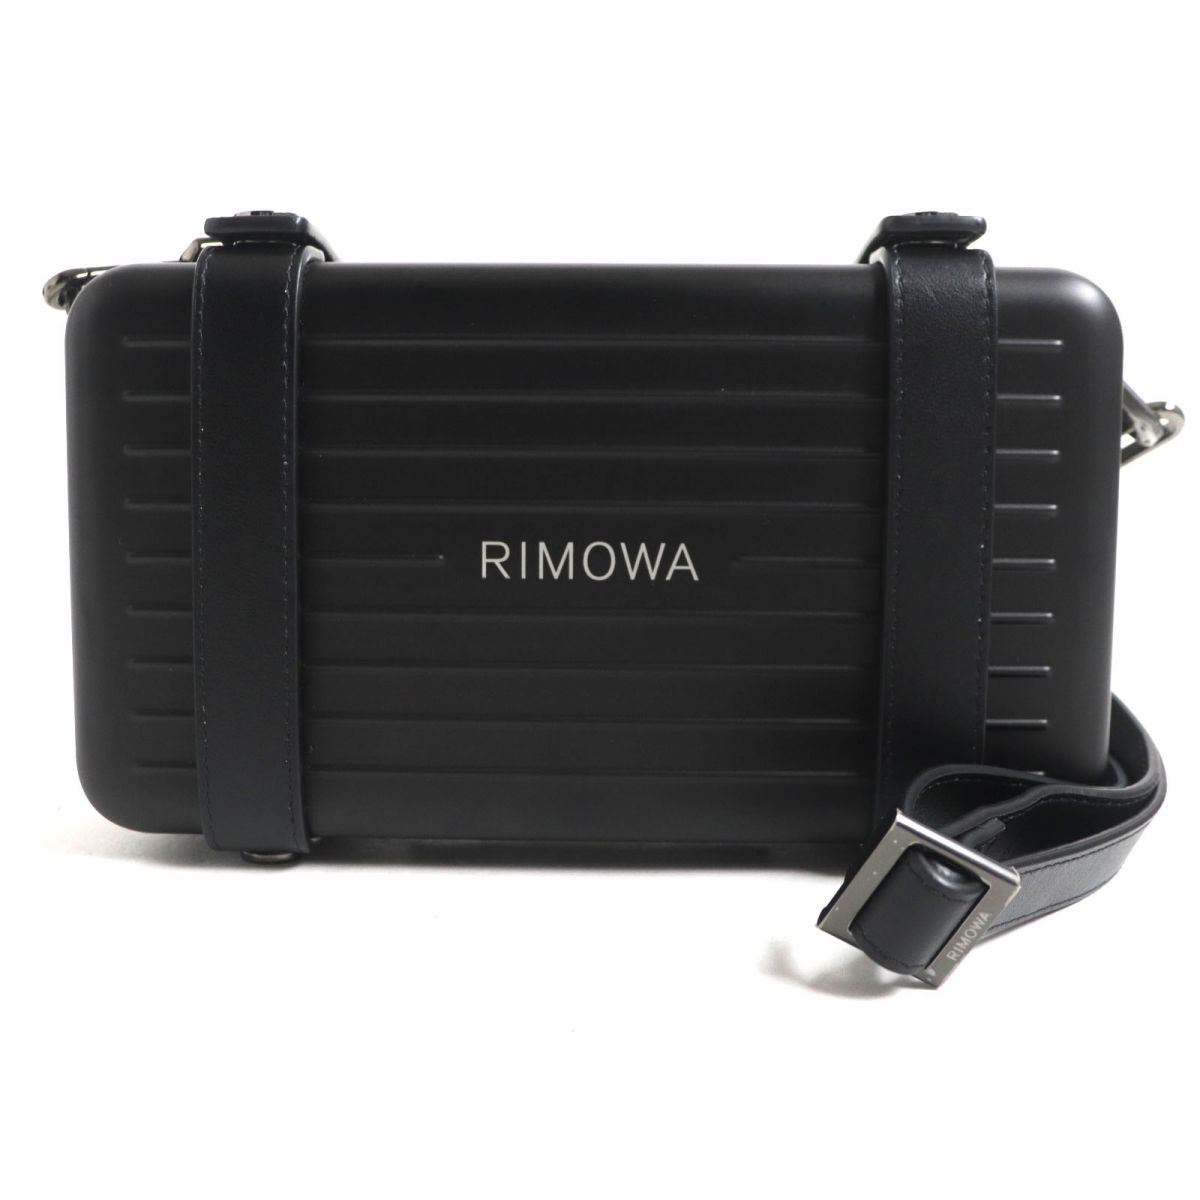 未使用品▼RIMOWA リモワ パーソナル アルミニウム クロスボディバッグ ブラック×ガンメタリック ドイツ製 メンズ 箱・保存袋付き